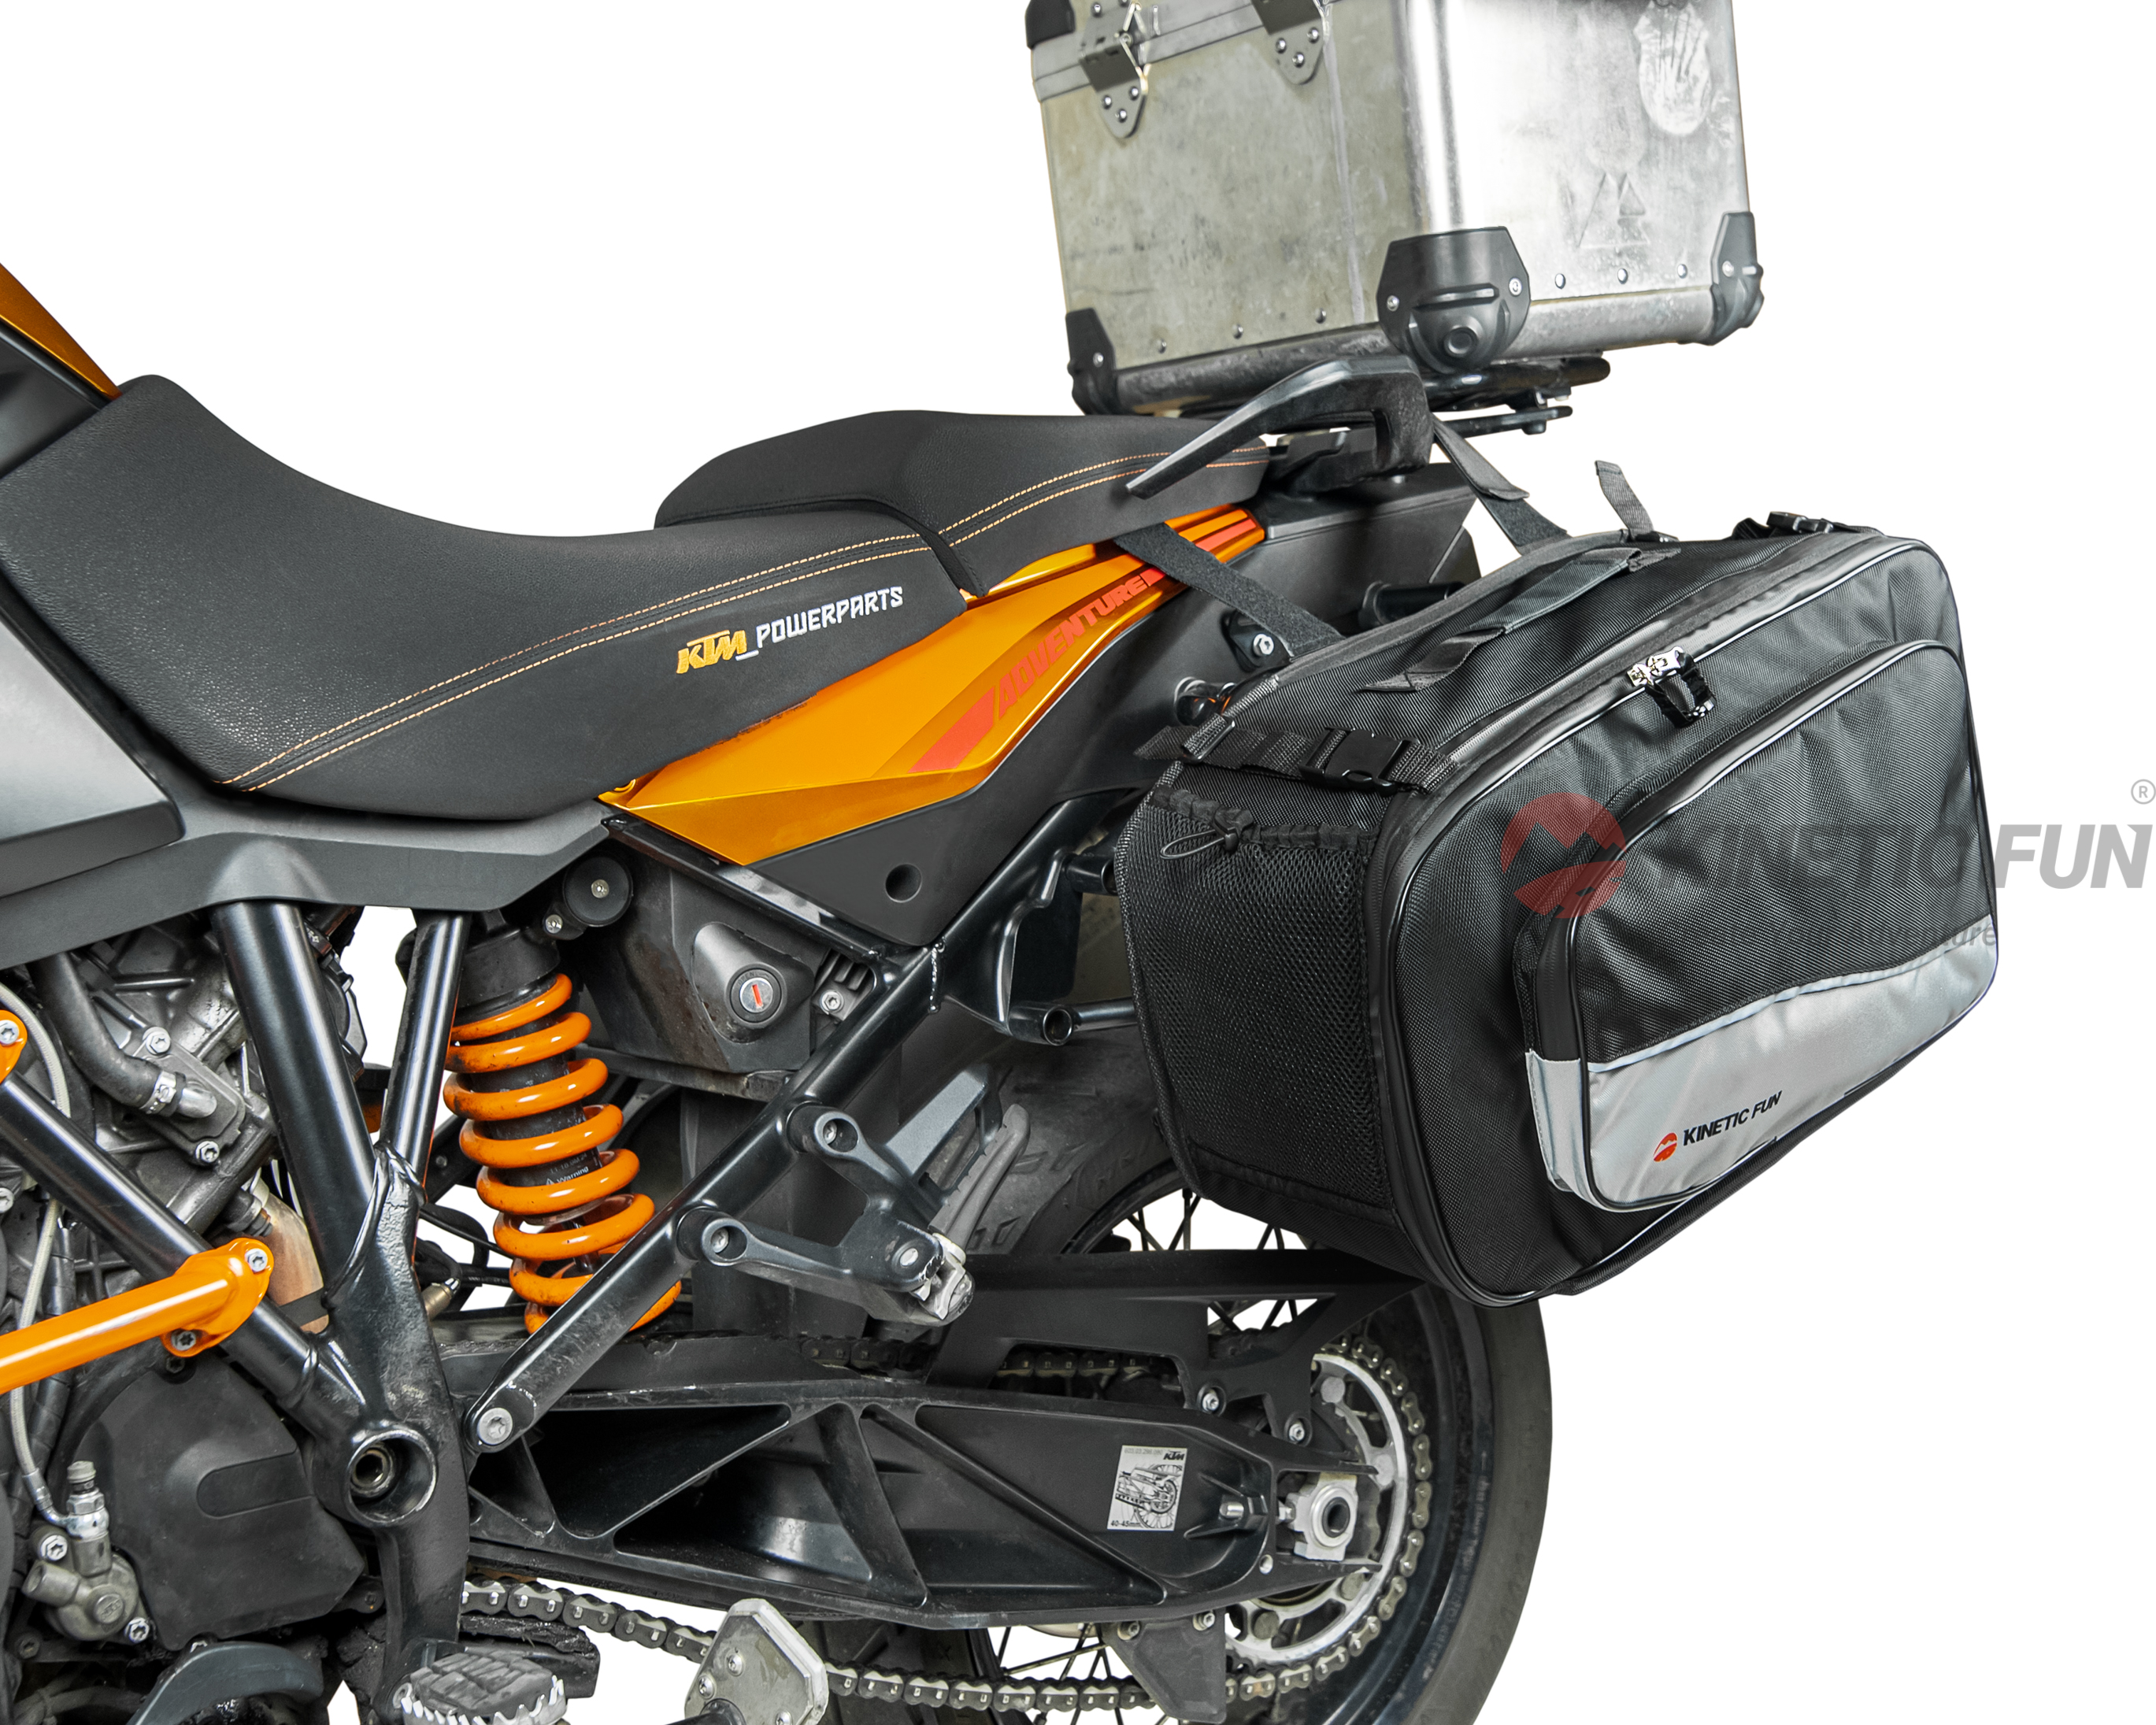 Сумки для мотоцикла Kawasaki VERSYS 650 (KLE 650 B) - боковые XL Evo (пара), объём 46-68 литров